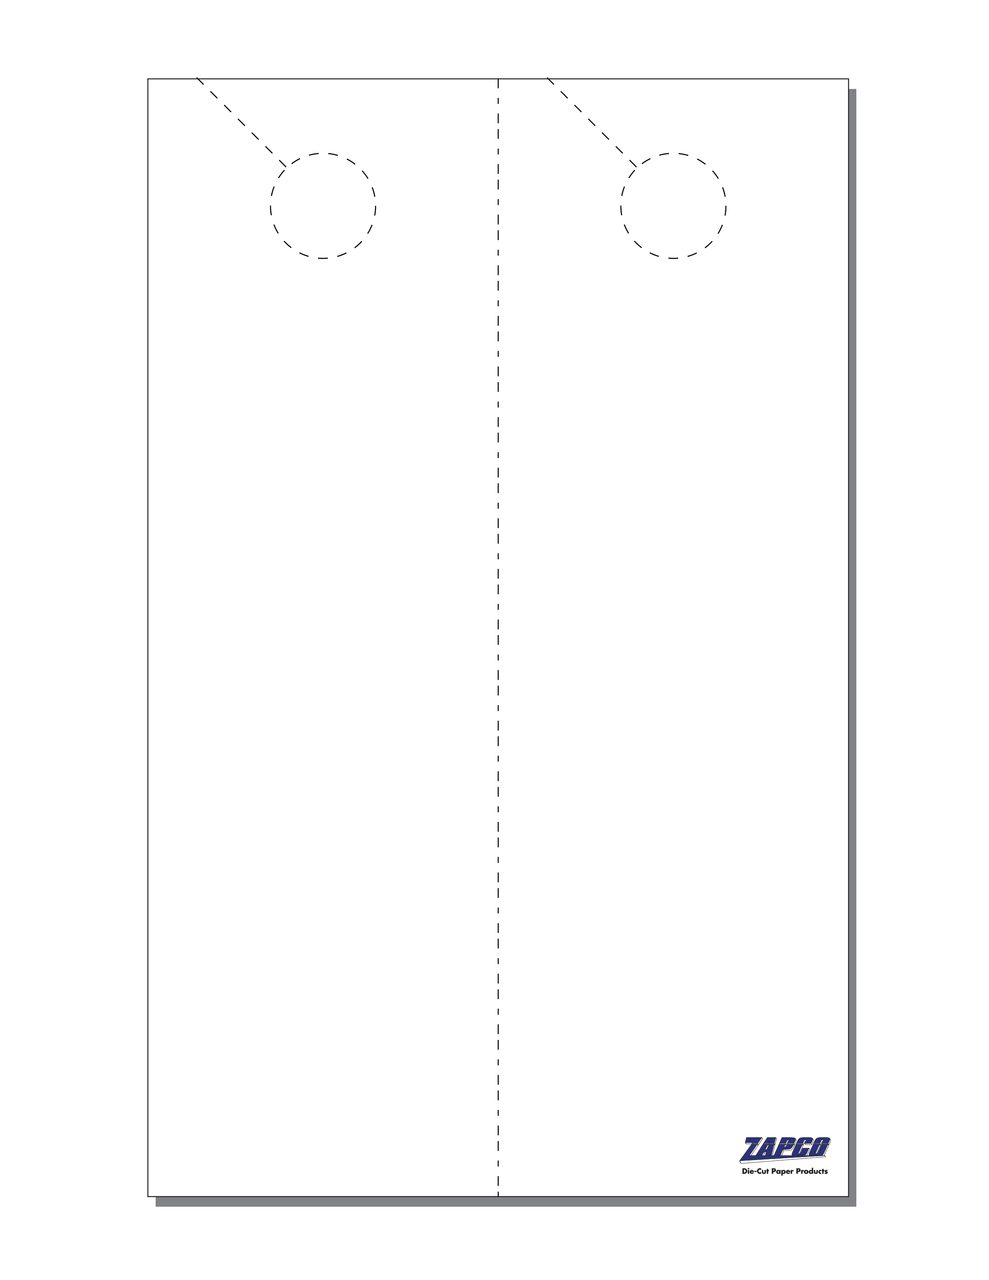 Item 233: 2-Up 5" x 16" Door Hanger Paper 10" x 16" Sheet (250 Sheets)